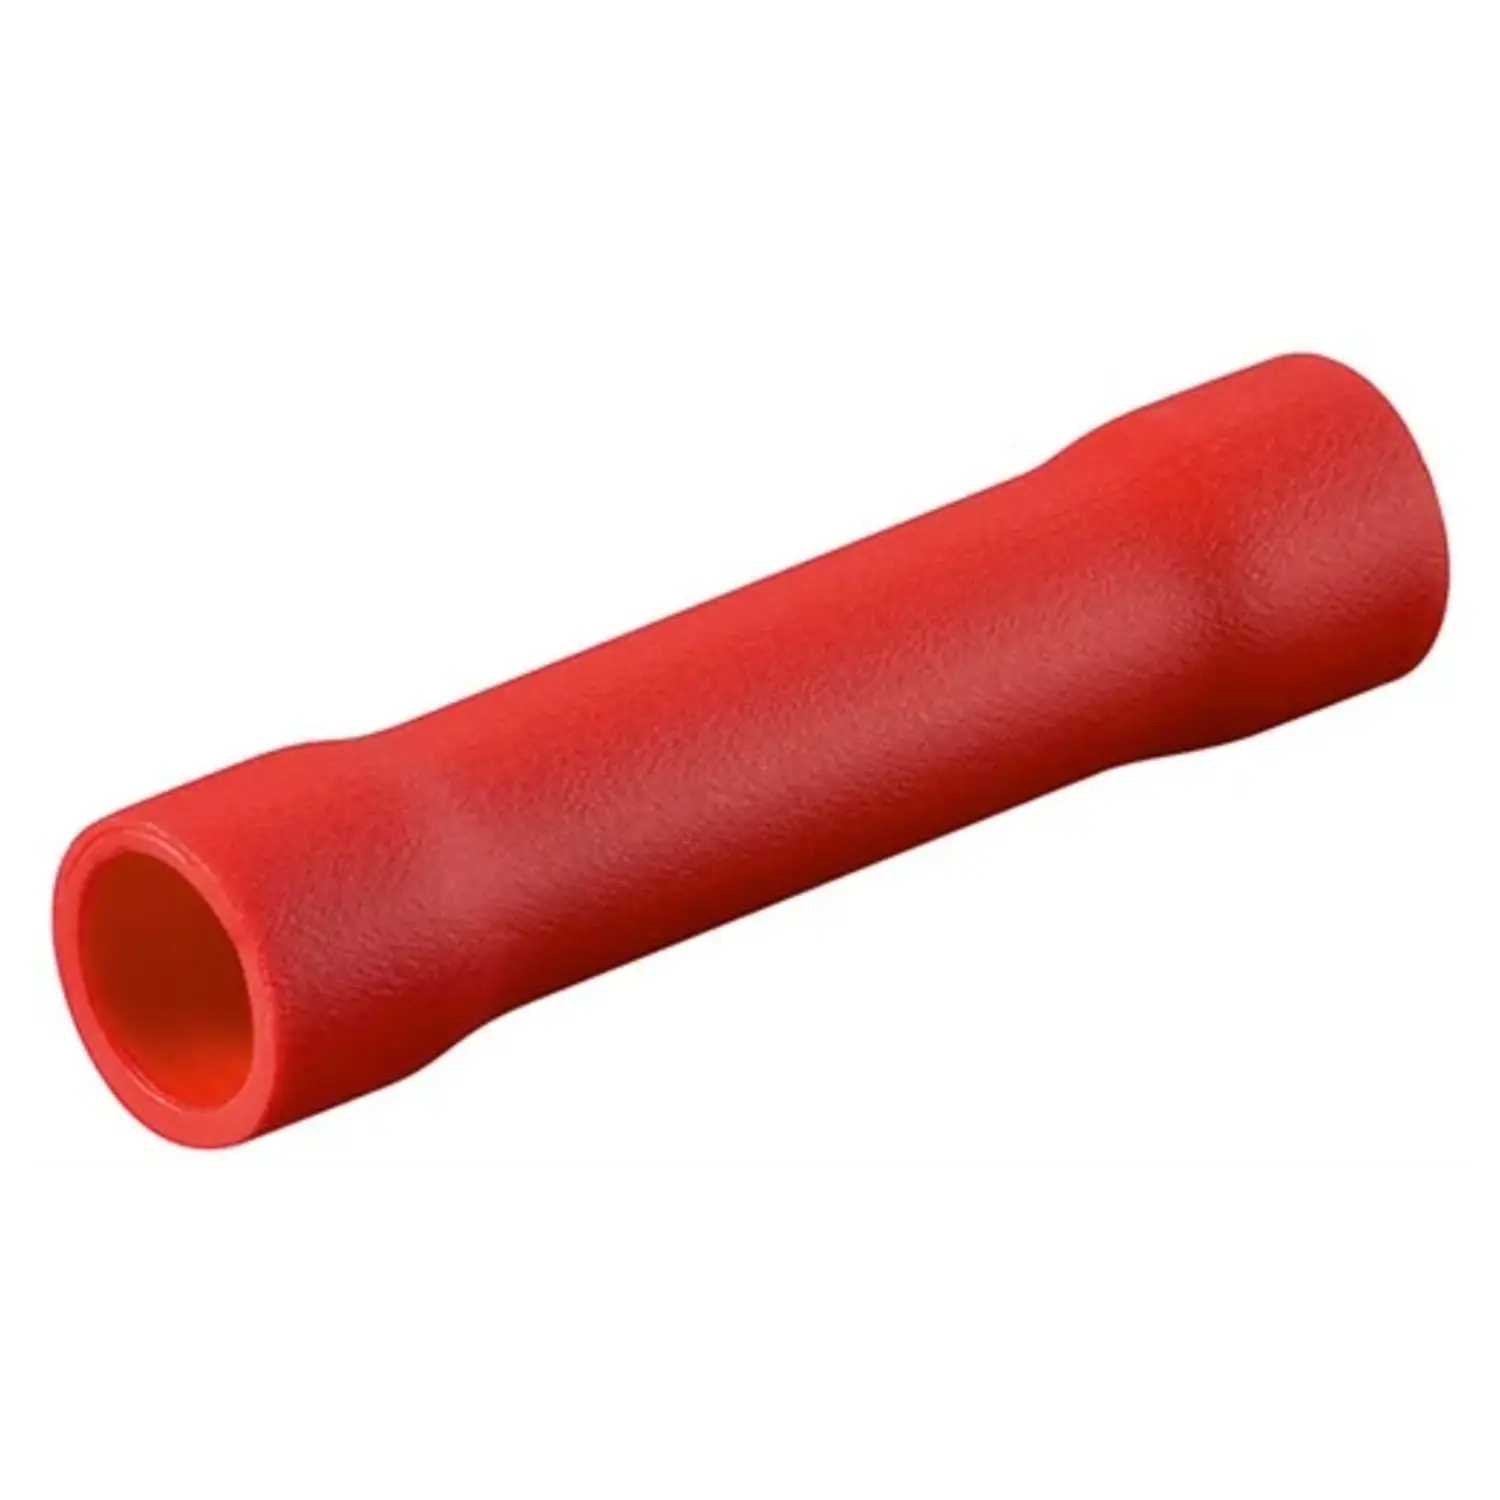 immagine del prodotto connettore di testa fischiotto 1.5-2.5 mm isolato giunto tubetto filo rosso 100 pezzi